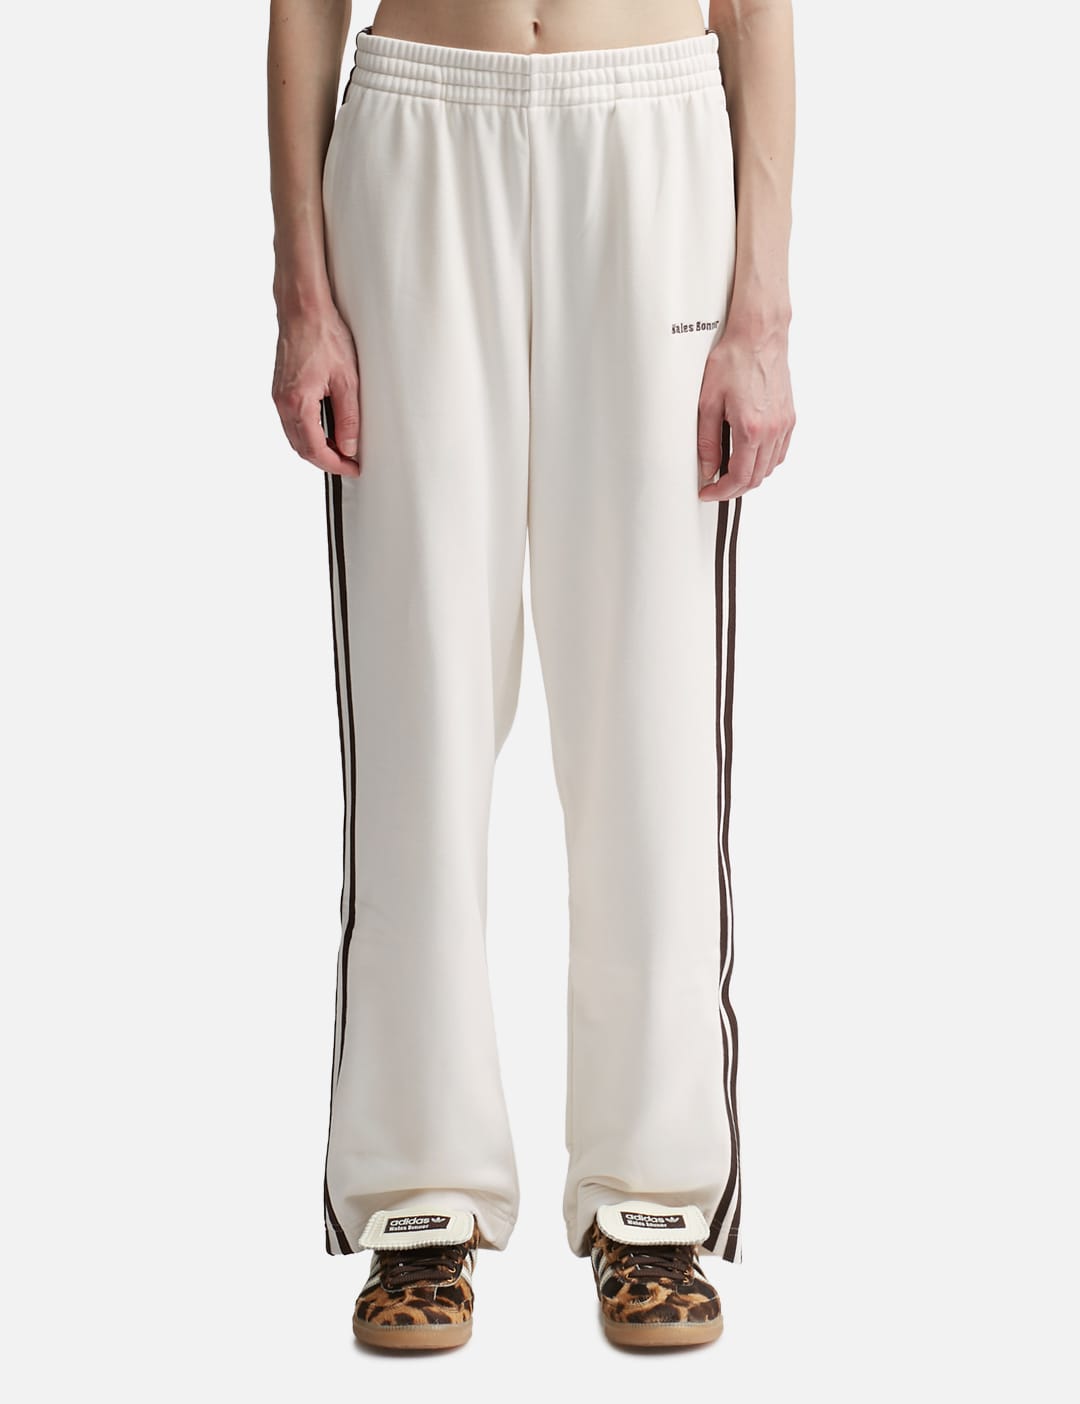 F78363 Firebird TP adidas Originals New Woman's pants – Mann Sports Outlet